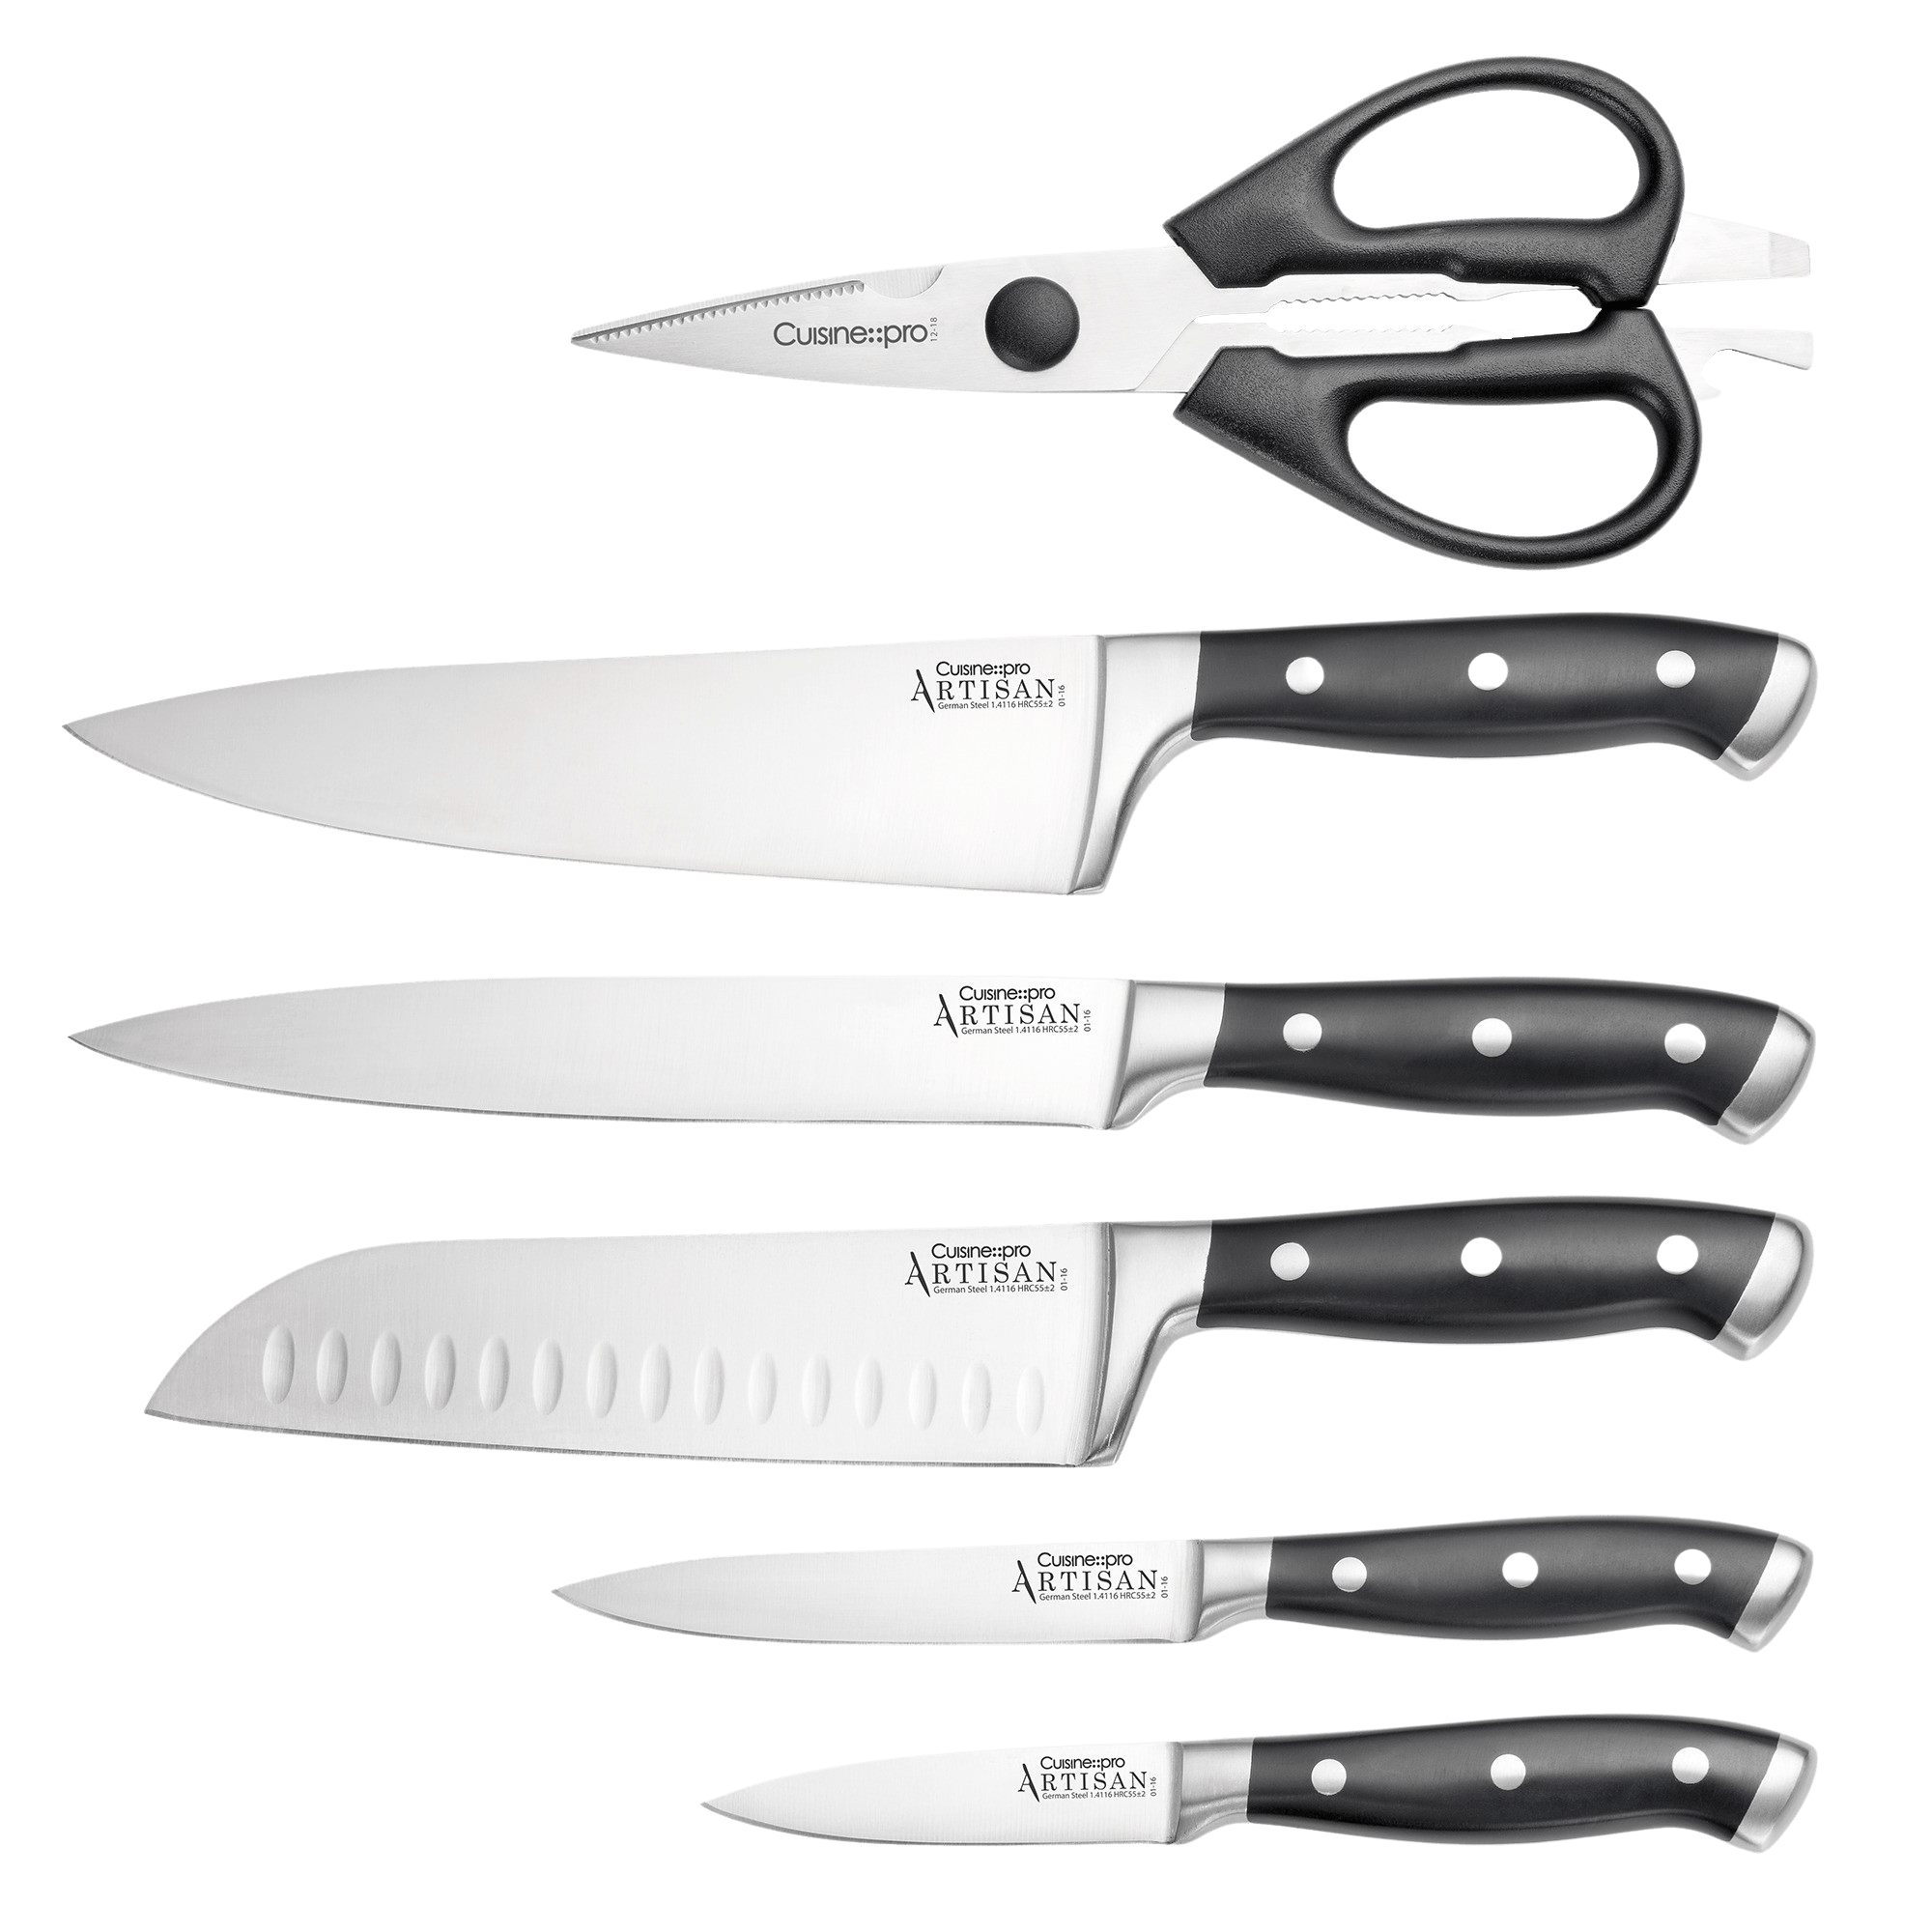 Cuisine::pro® iconiX™ Straub knife block 7 piece